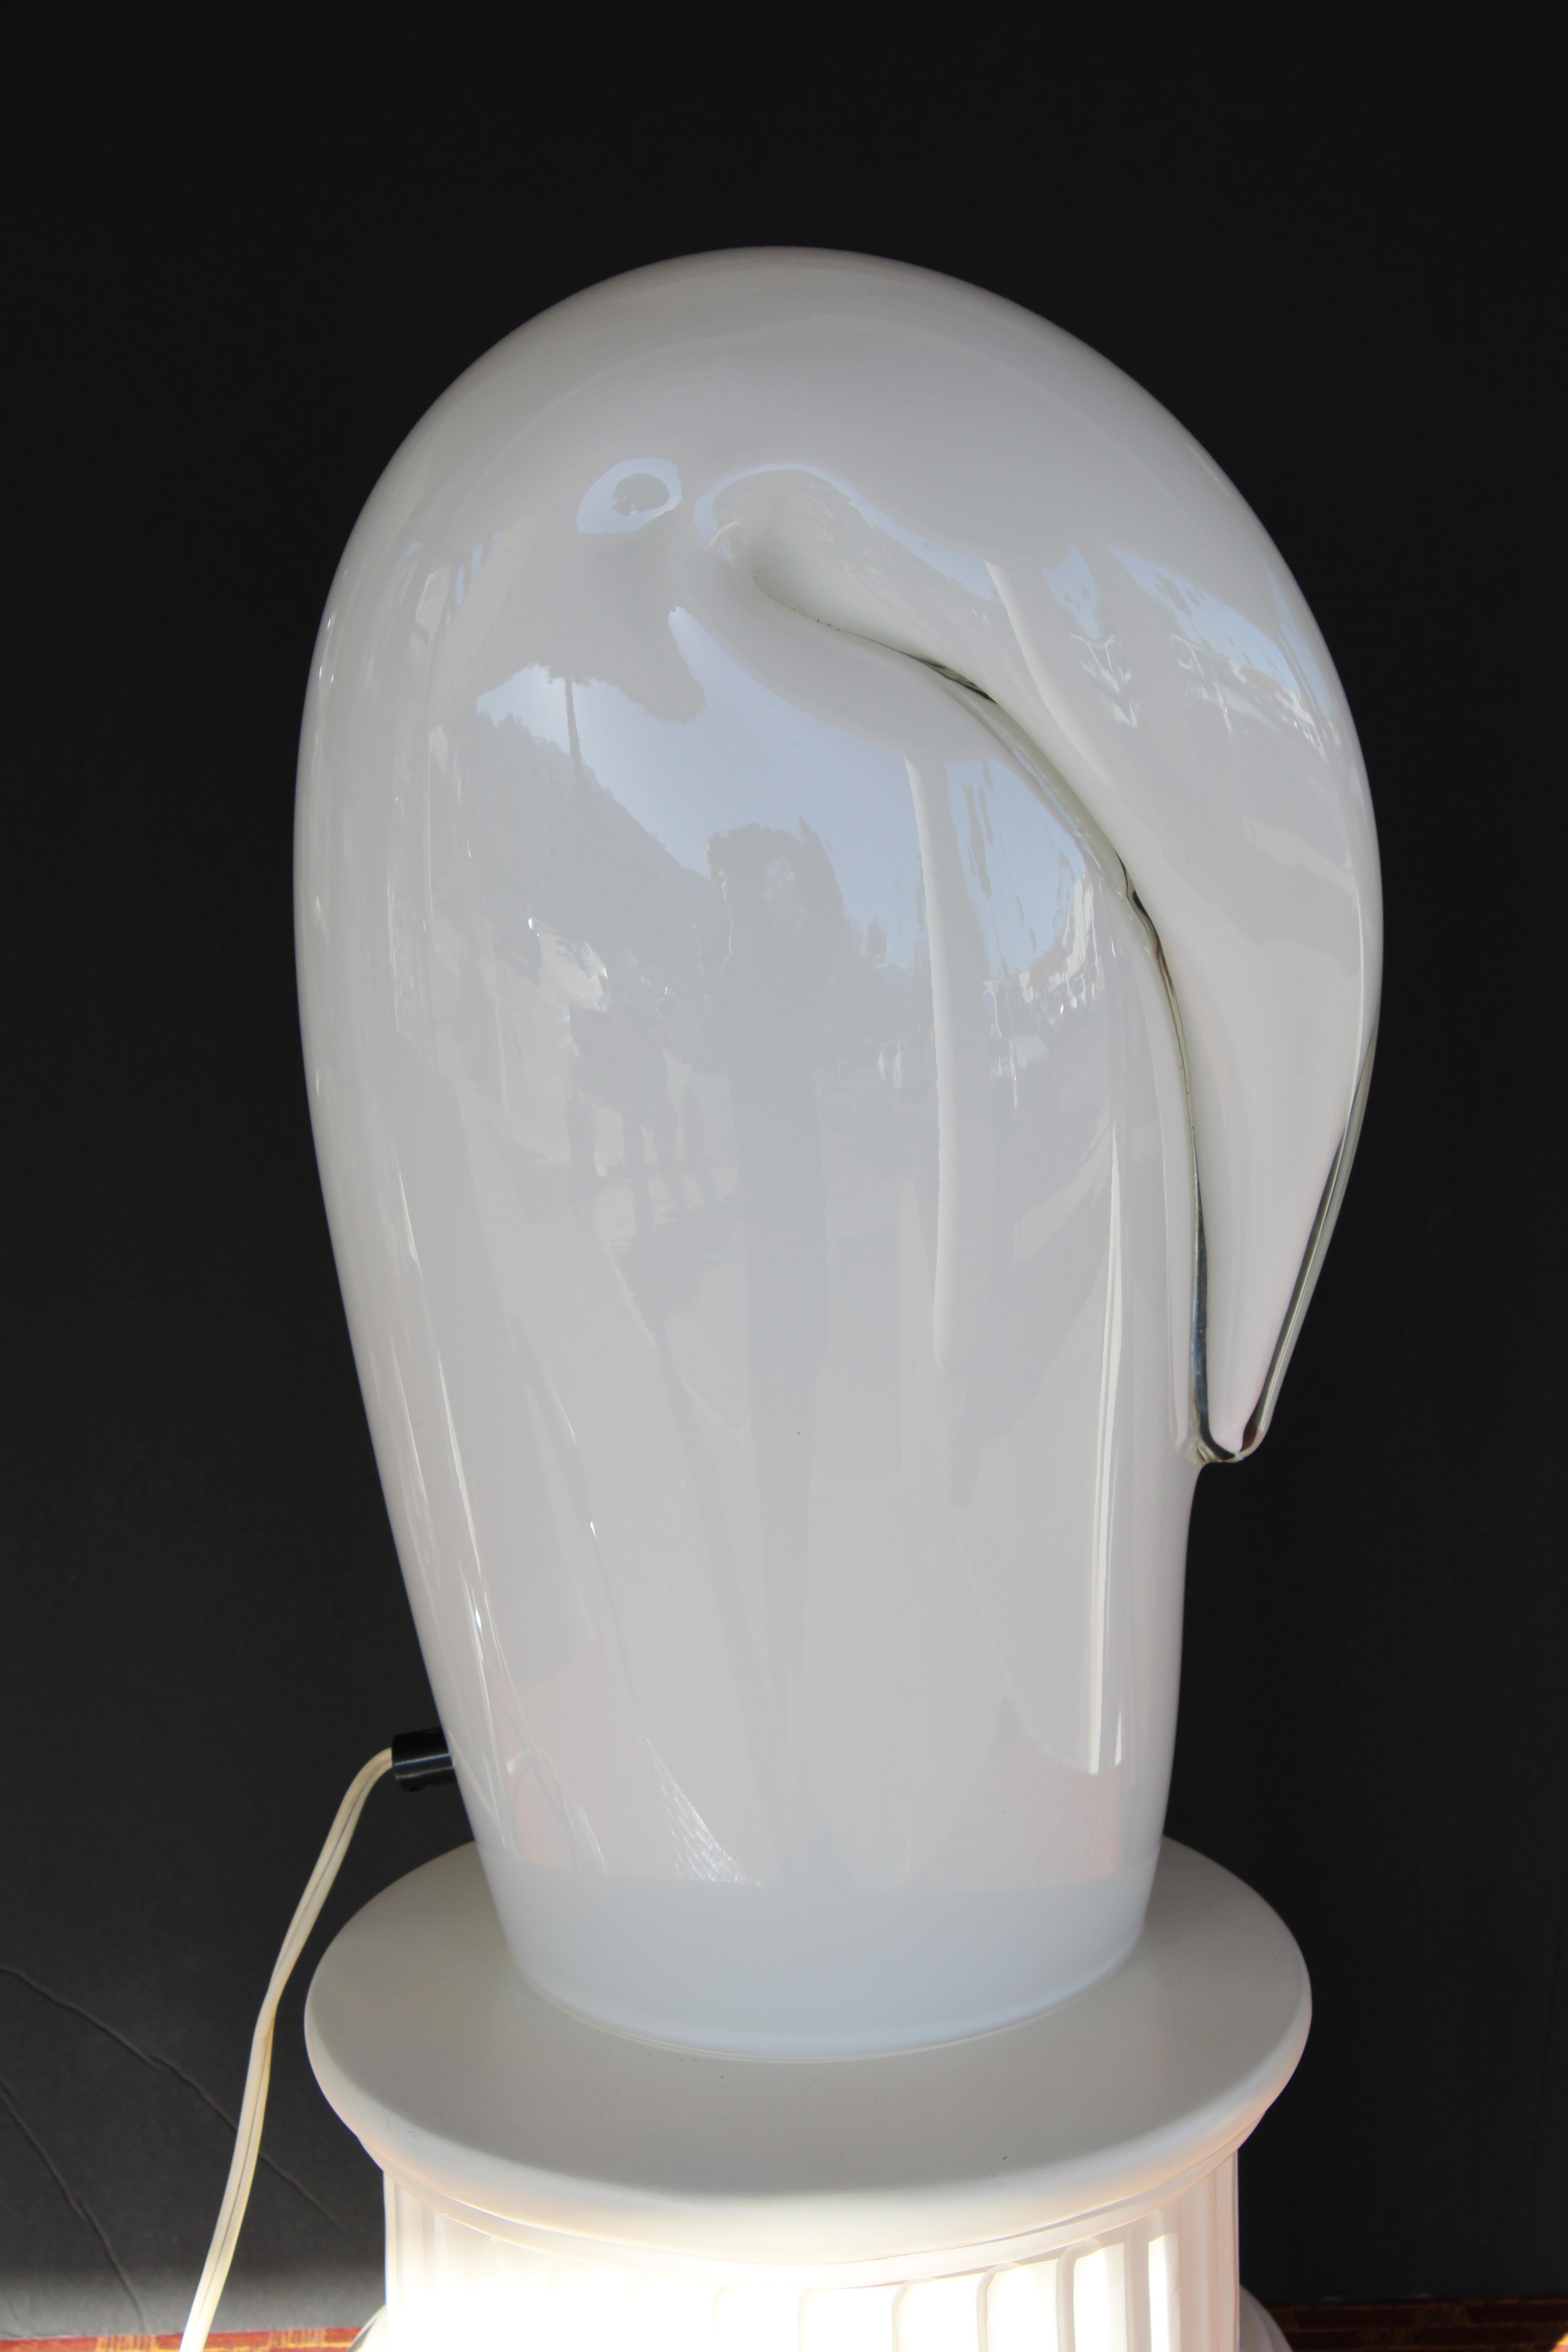 Une lampe spectaculaire et sculpturale de Luciano Vistosi pour Vetri. La lampe est impressionnante, mesurant 15,5